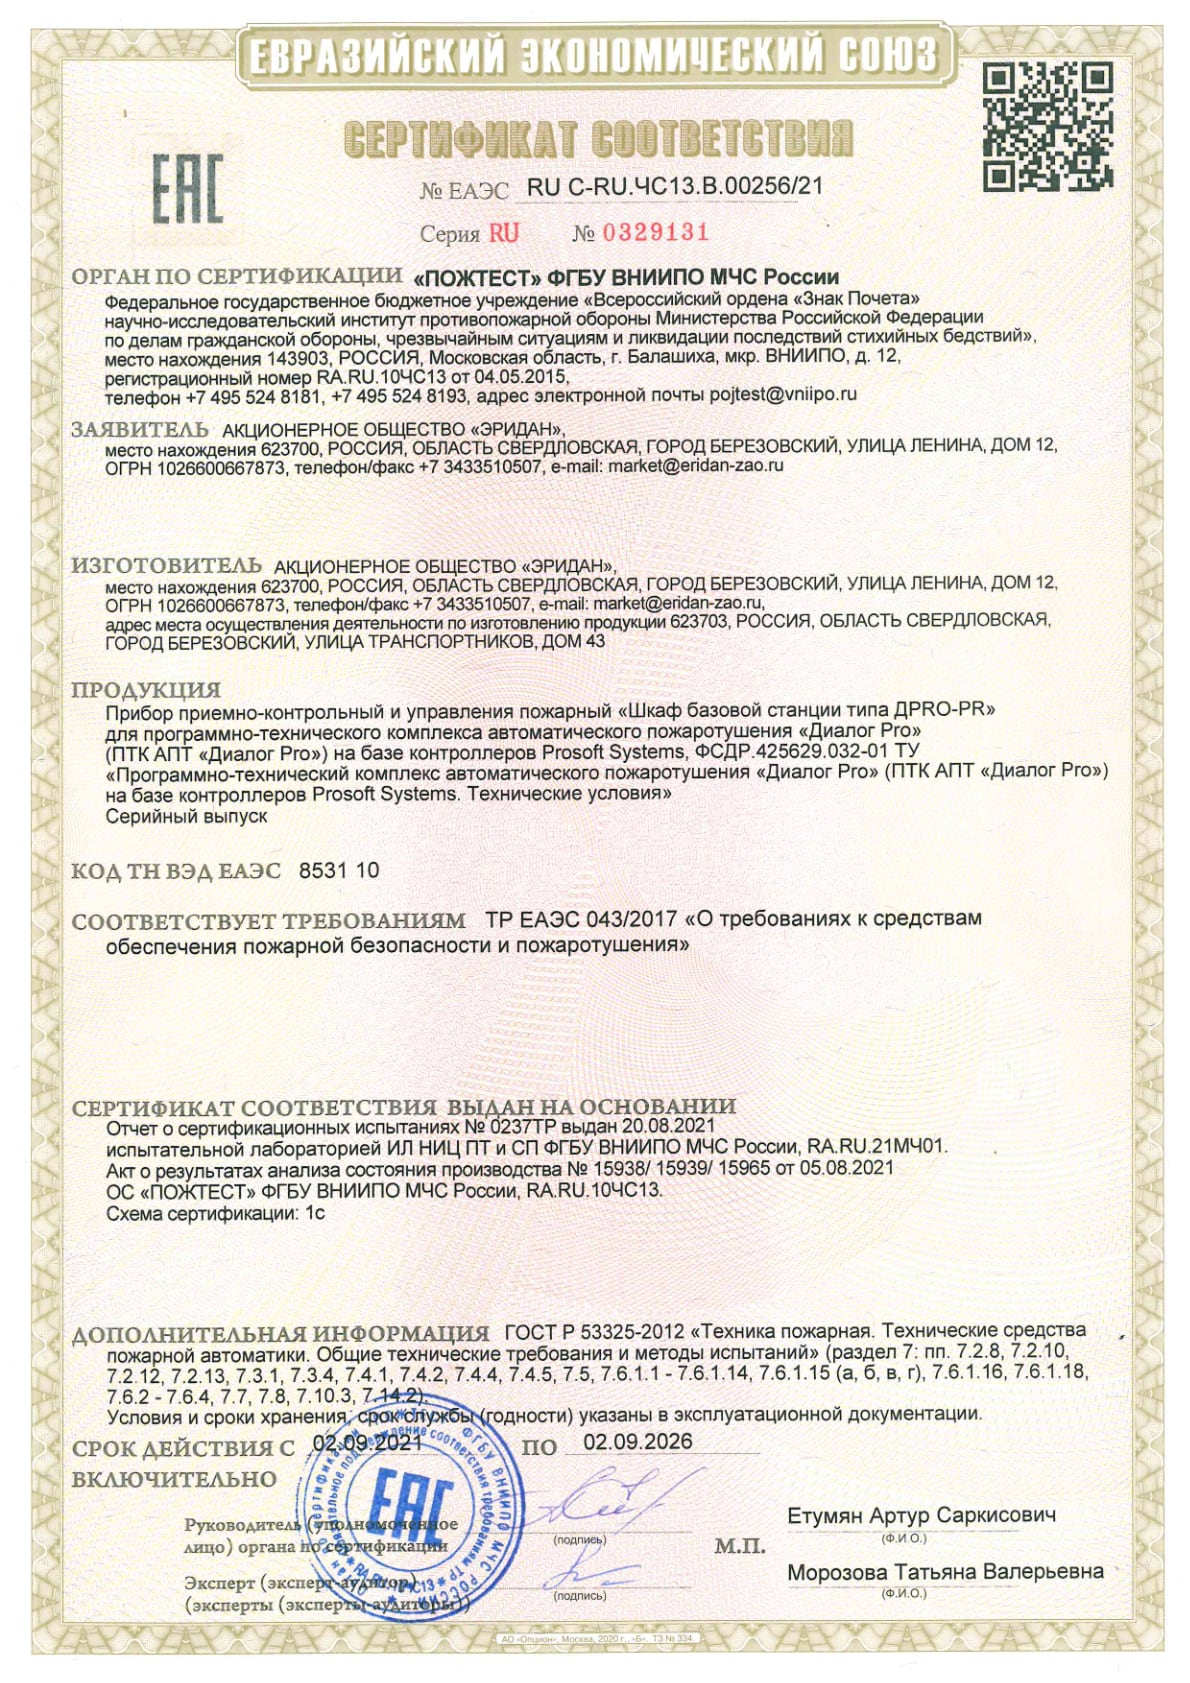 Сертификат ТР ЕАЭС 043 Prosoft Systems